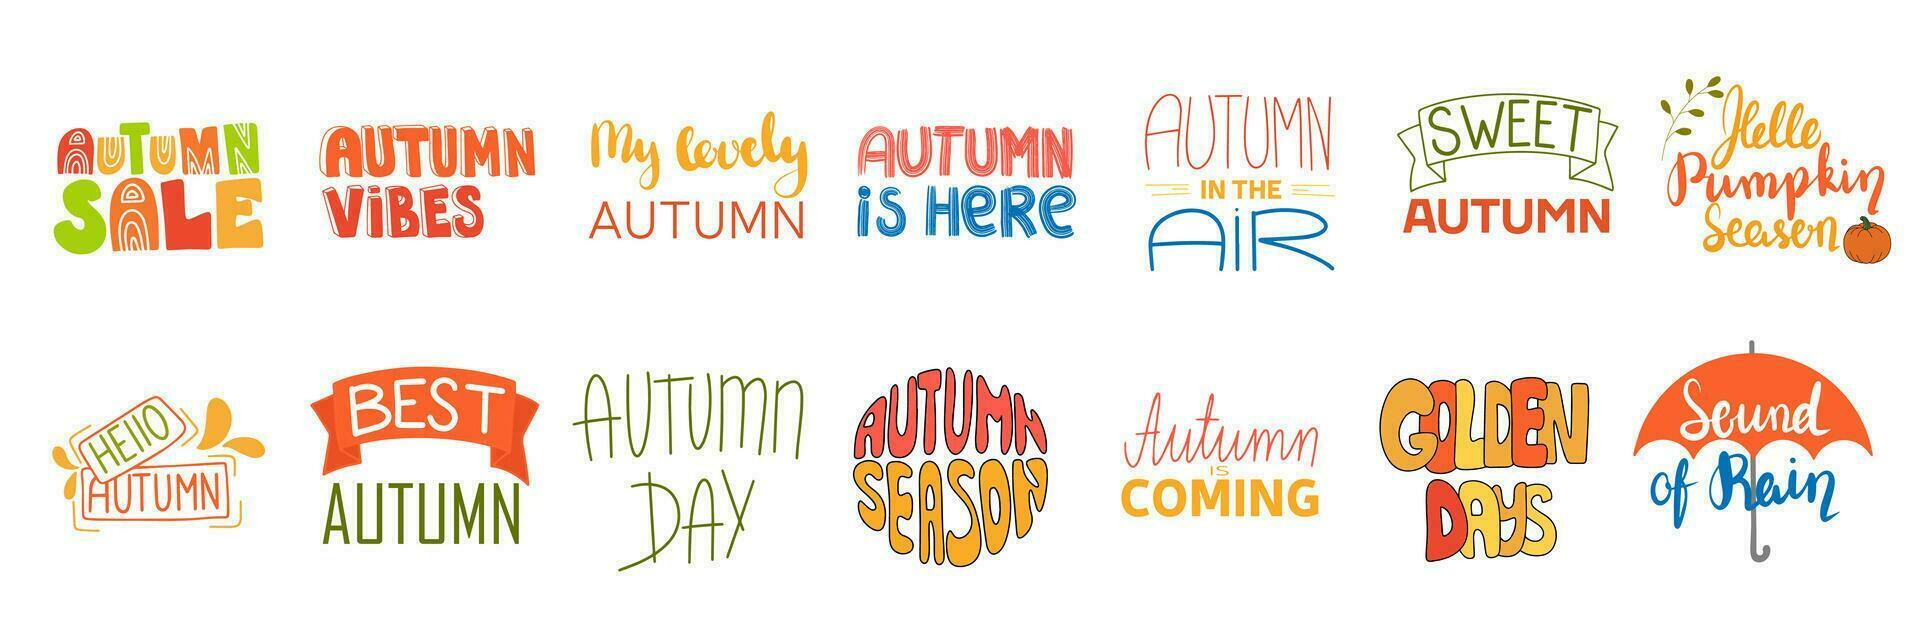 herfst gevoel, herfst is hier, herfst uitverkoop, gouden dagen, geluid van regenen, Hallo pompoen seizoen. vector